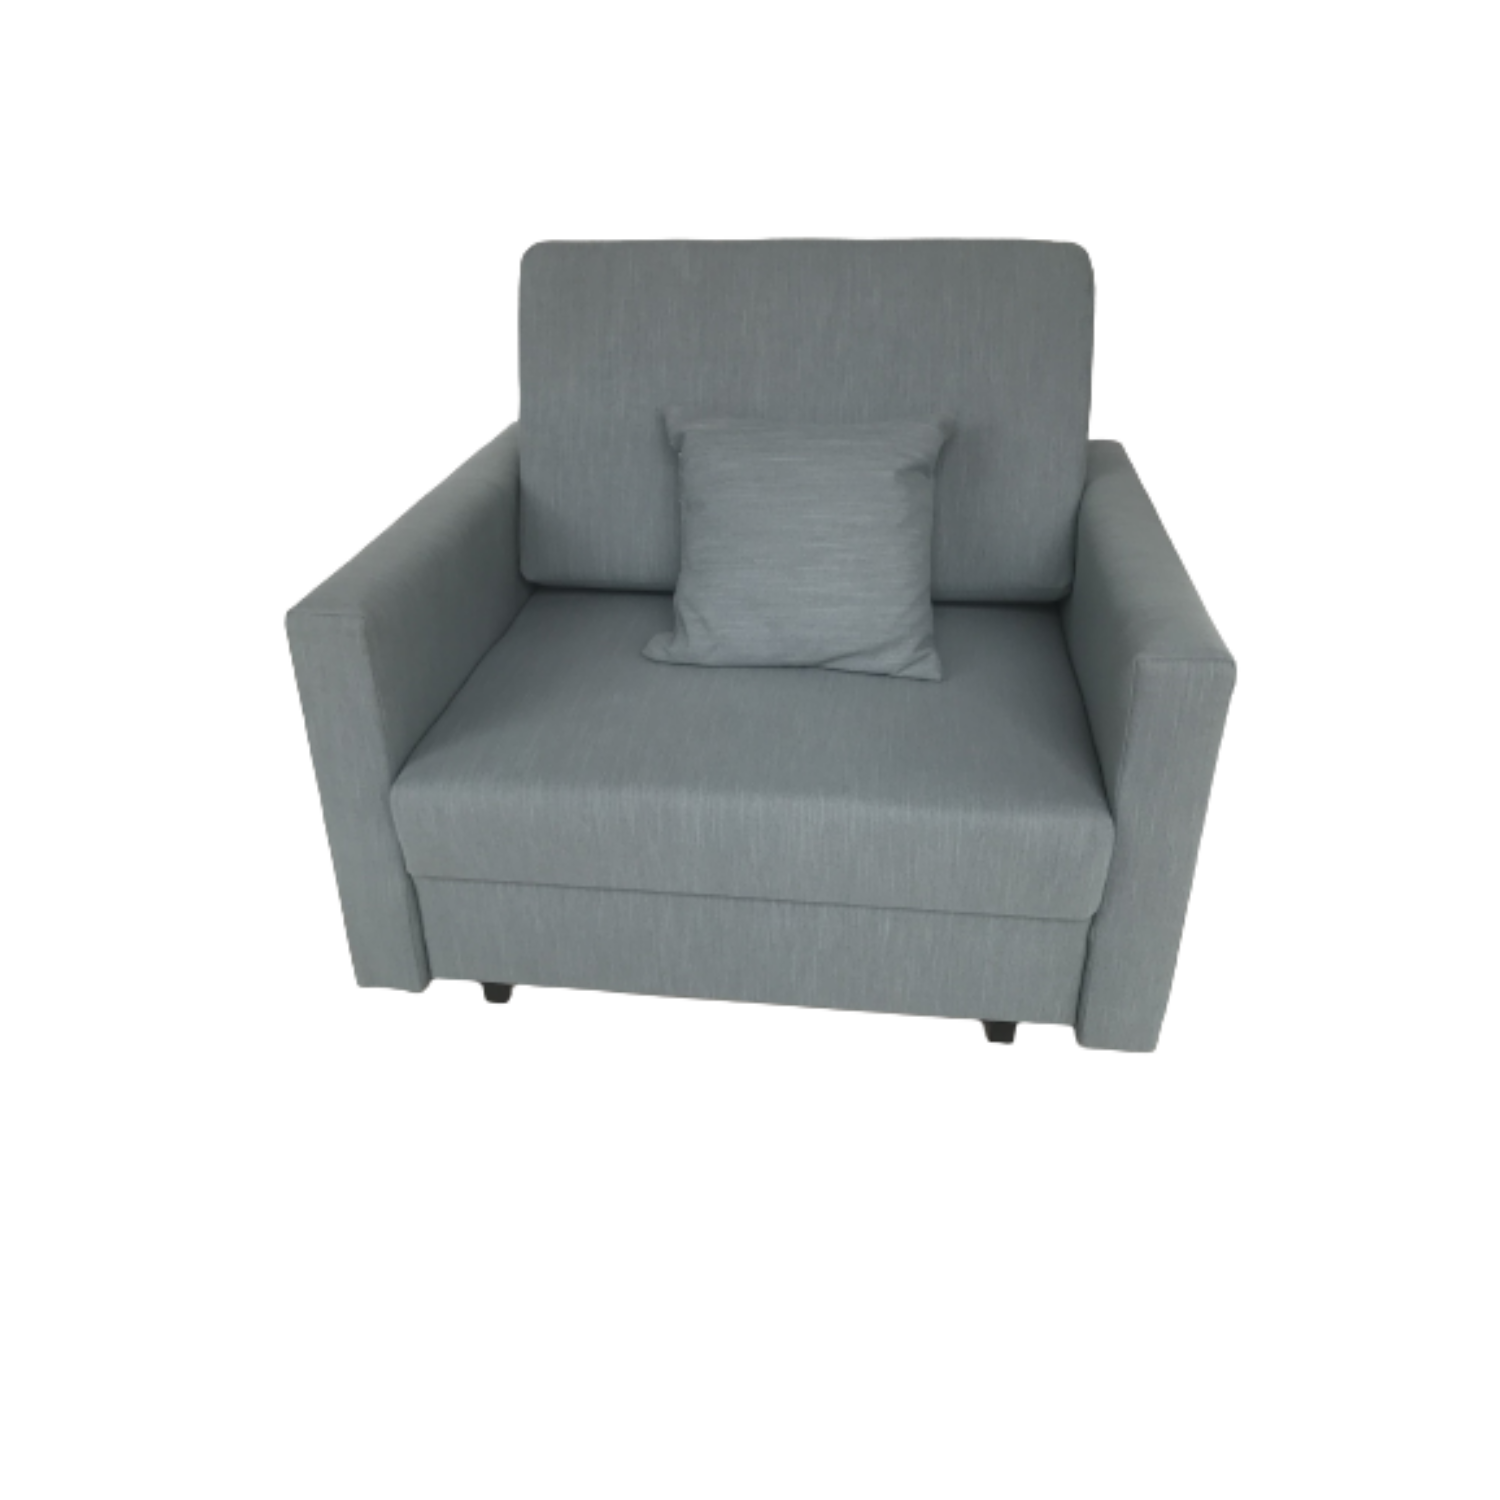 VIVA I SMART előre nyíló rugós, ágyneműtartós fotelágy